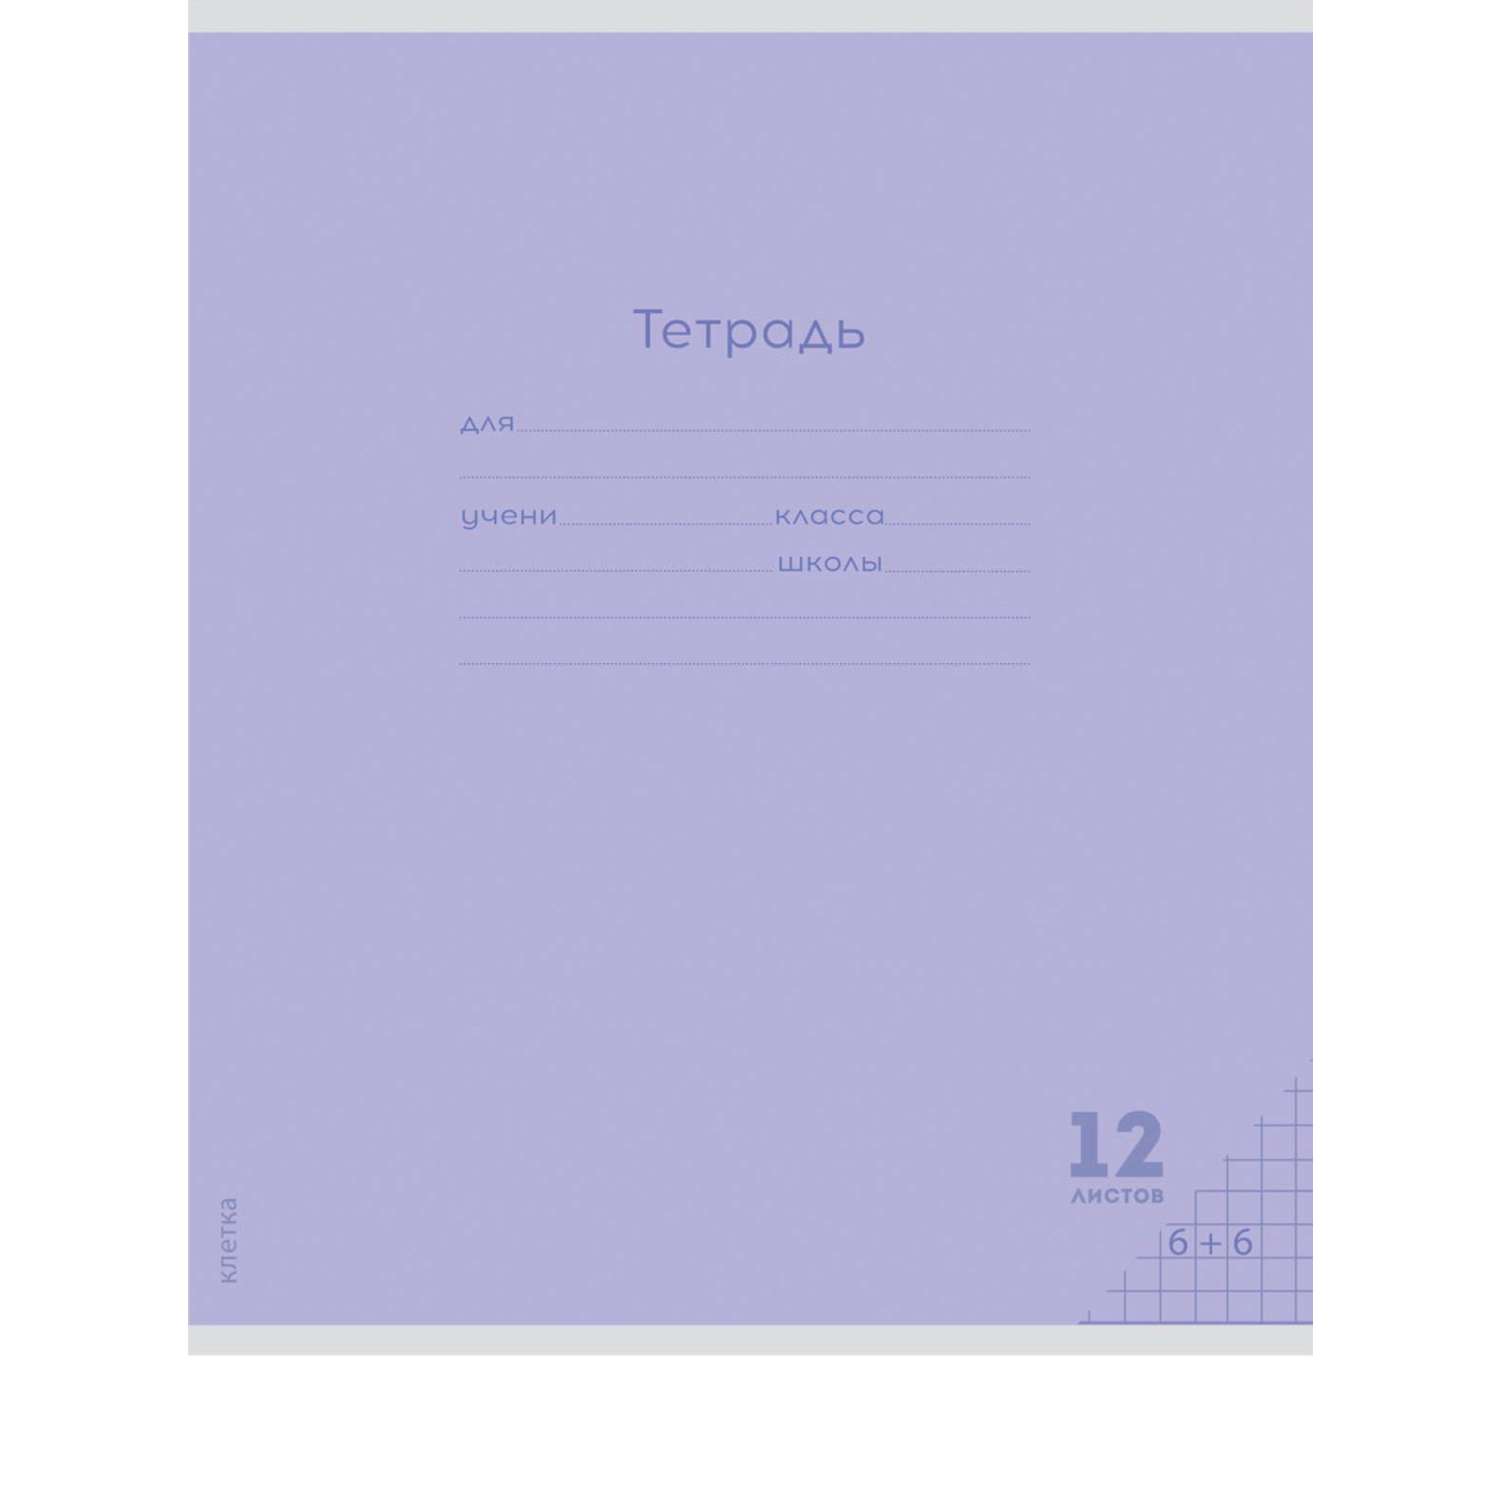 Тетради Prof Press Клетка 12л. классика цветная мелованная обложка комплект 10 штук - фото 4